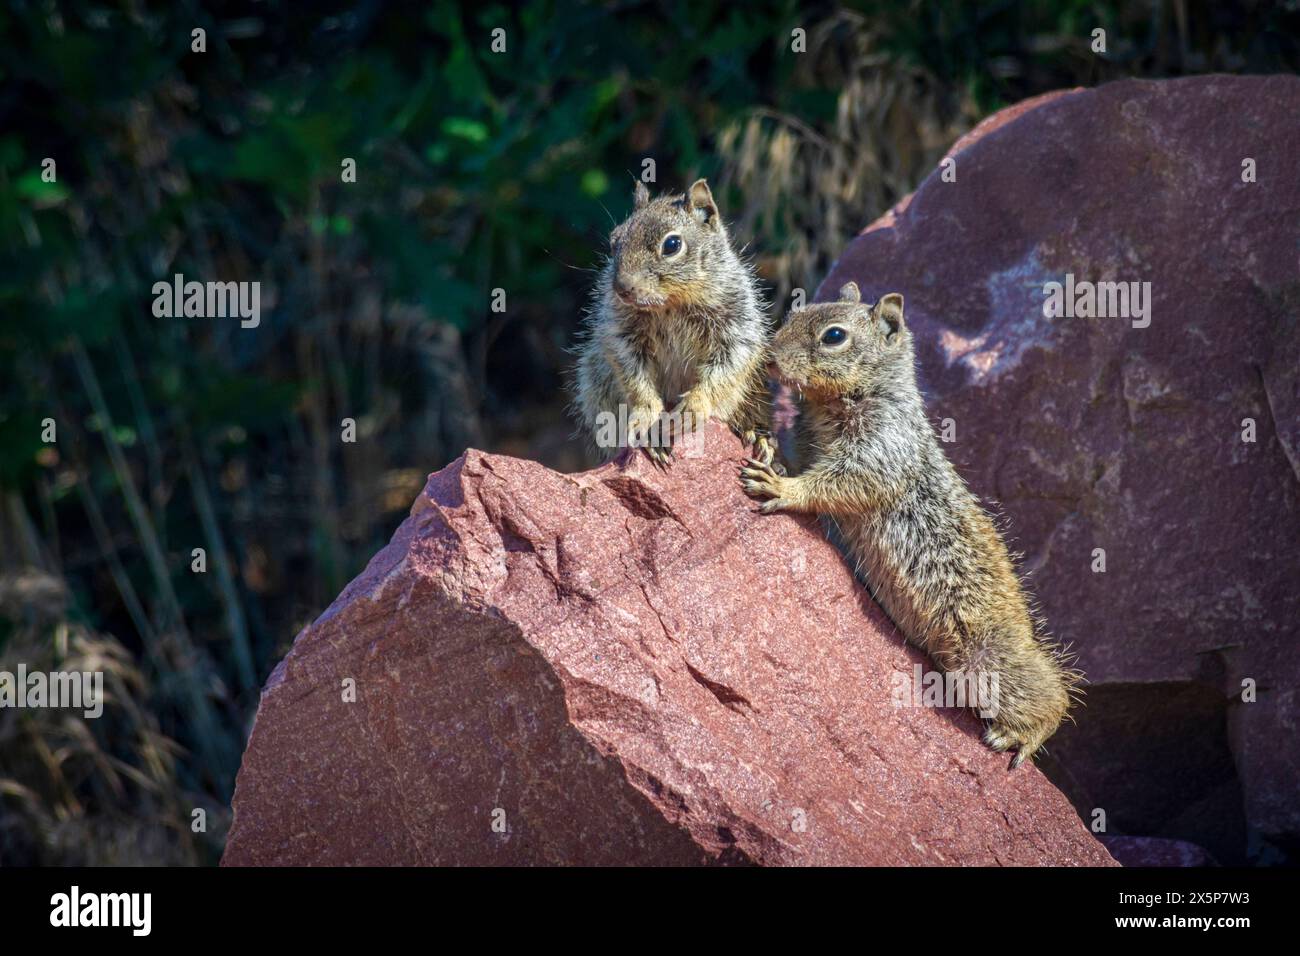 Deux écureuils rocheux (Otospermophilus variegatus), anciennement (Citellus variegatus), utilisant un gros rocher comme point de vue perché Castle Rock Area, Colorado USA. Banque D'Images